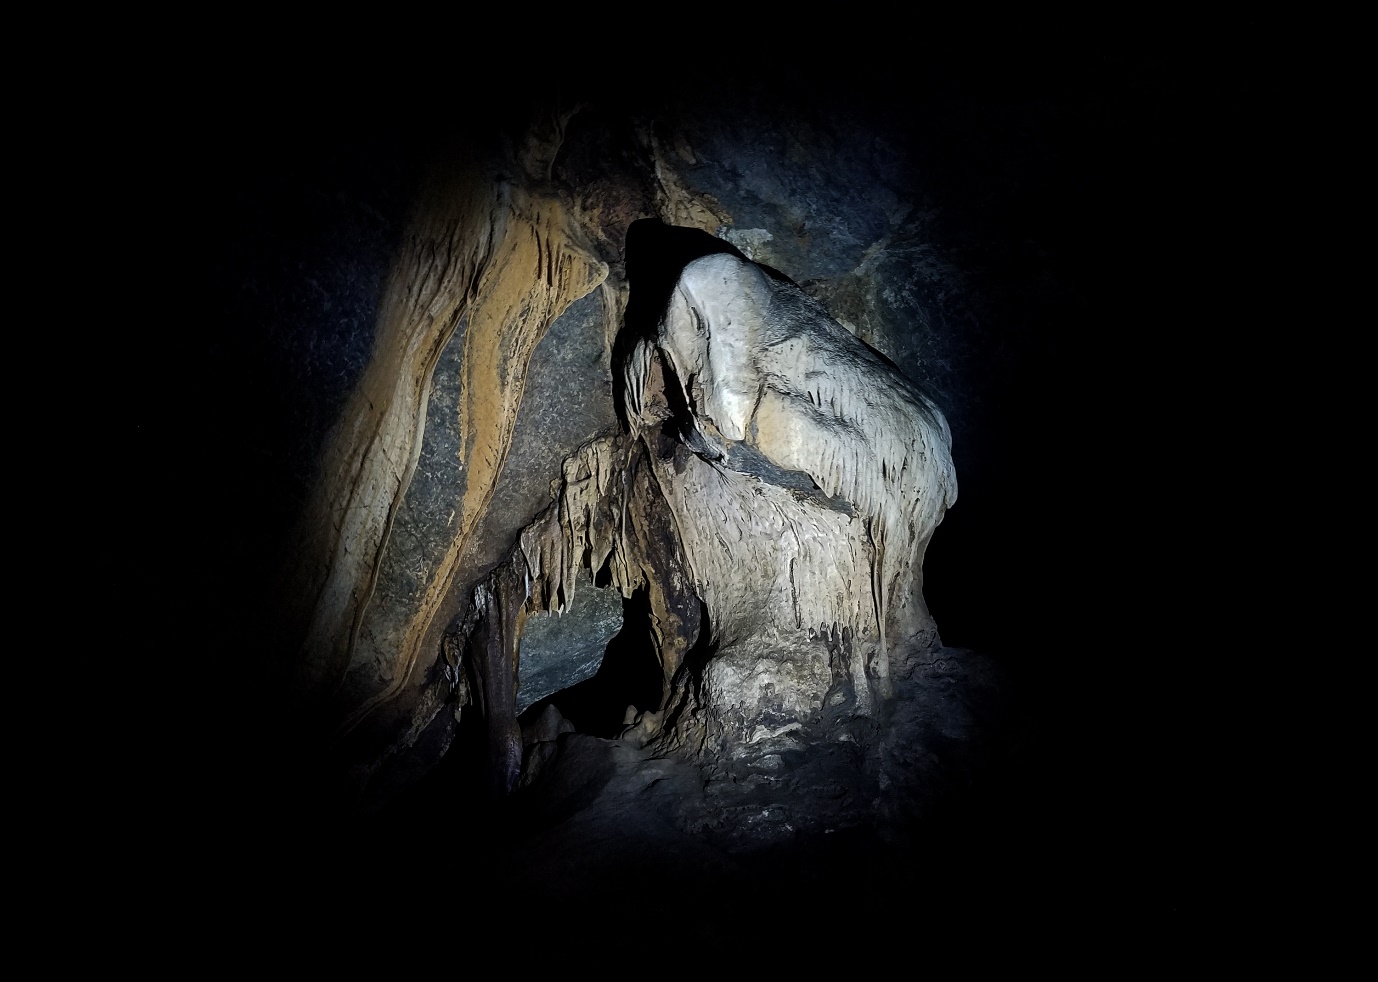 Khám phá hang động hoang sơ đầy mê mẩn giữ núi rừng Quảng Trị - 9